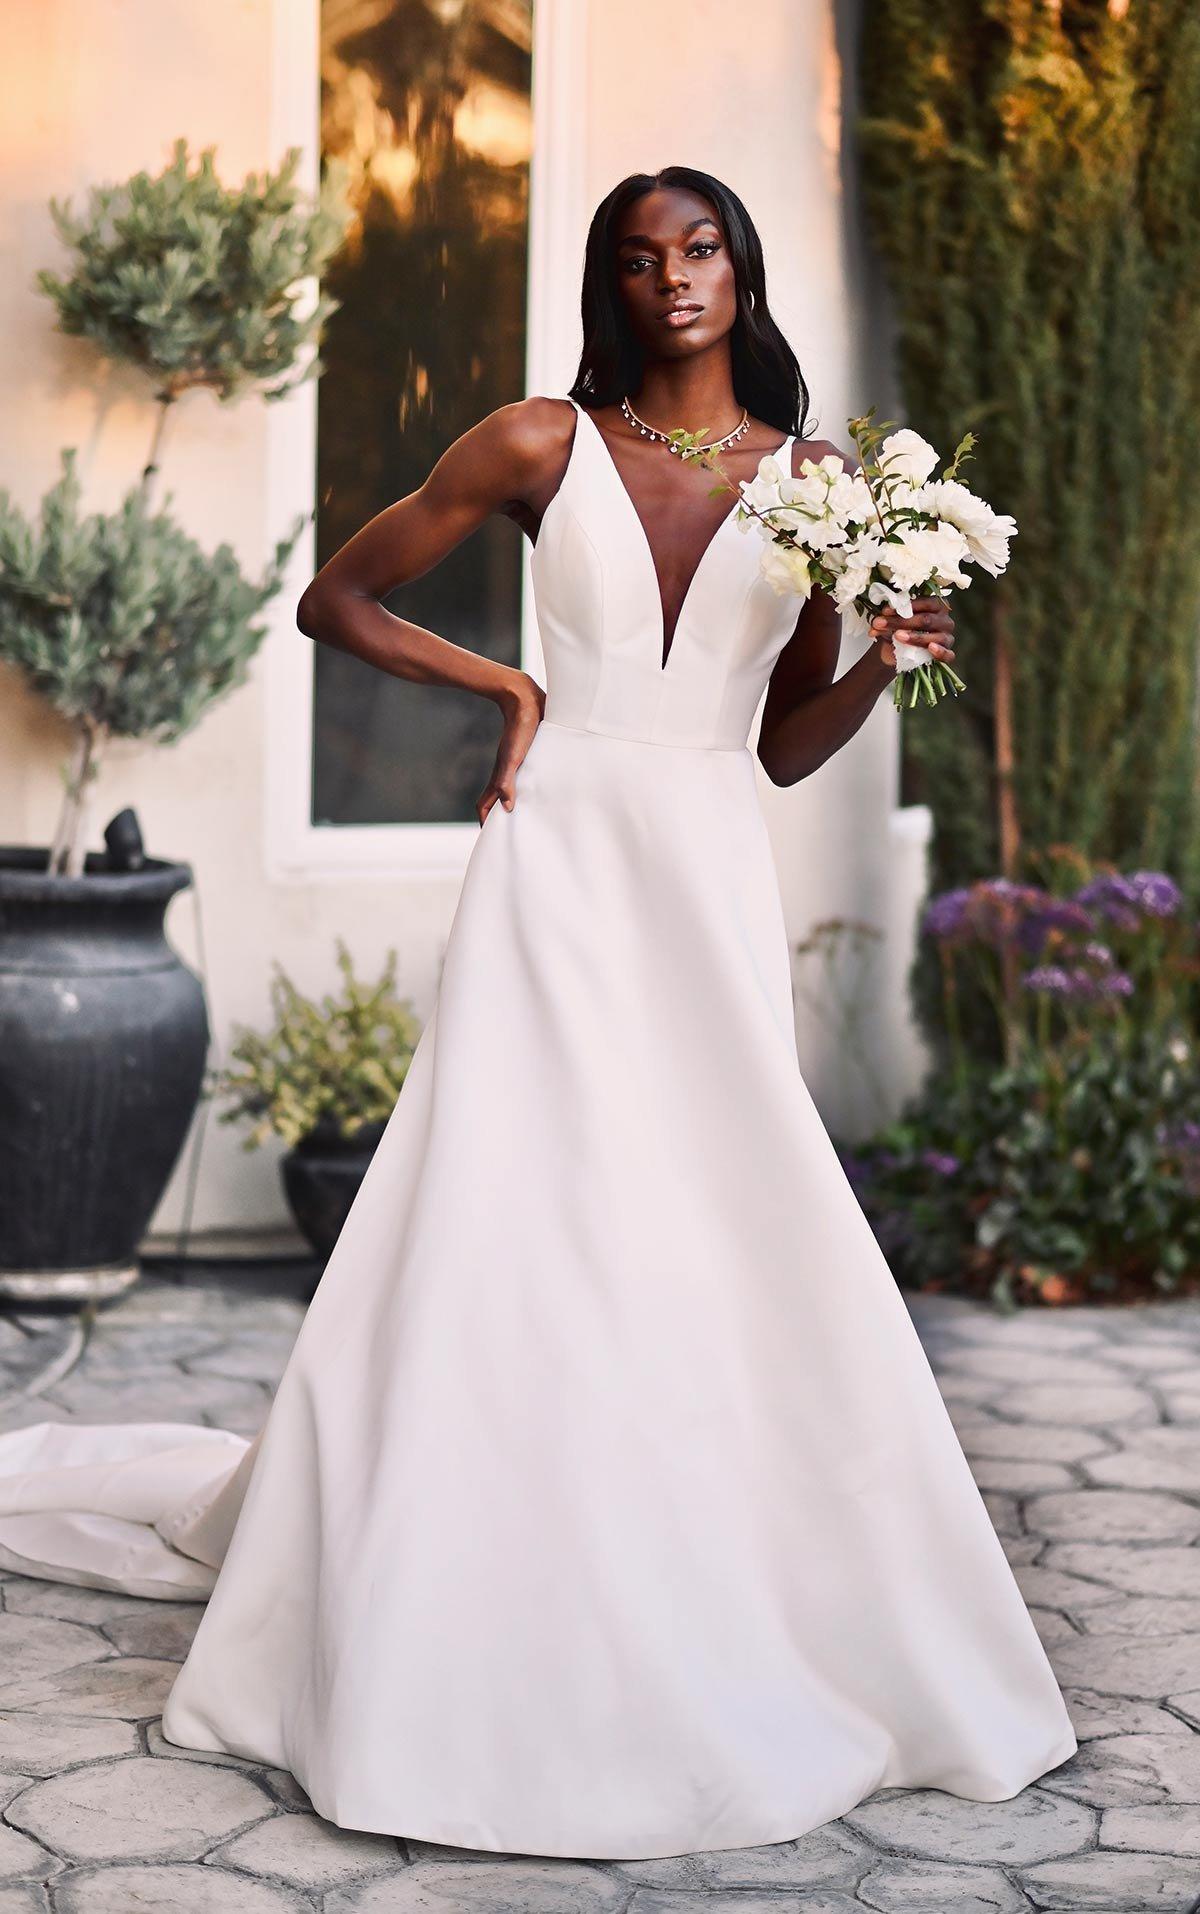 Vestidos de sencillos y elegantes para boda civil